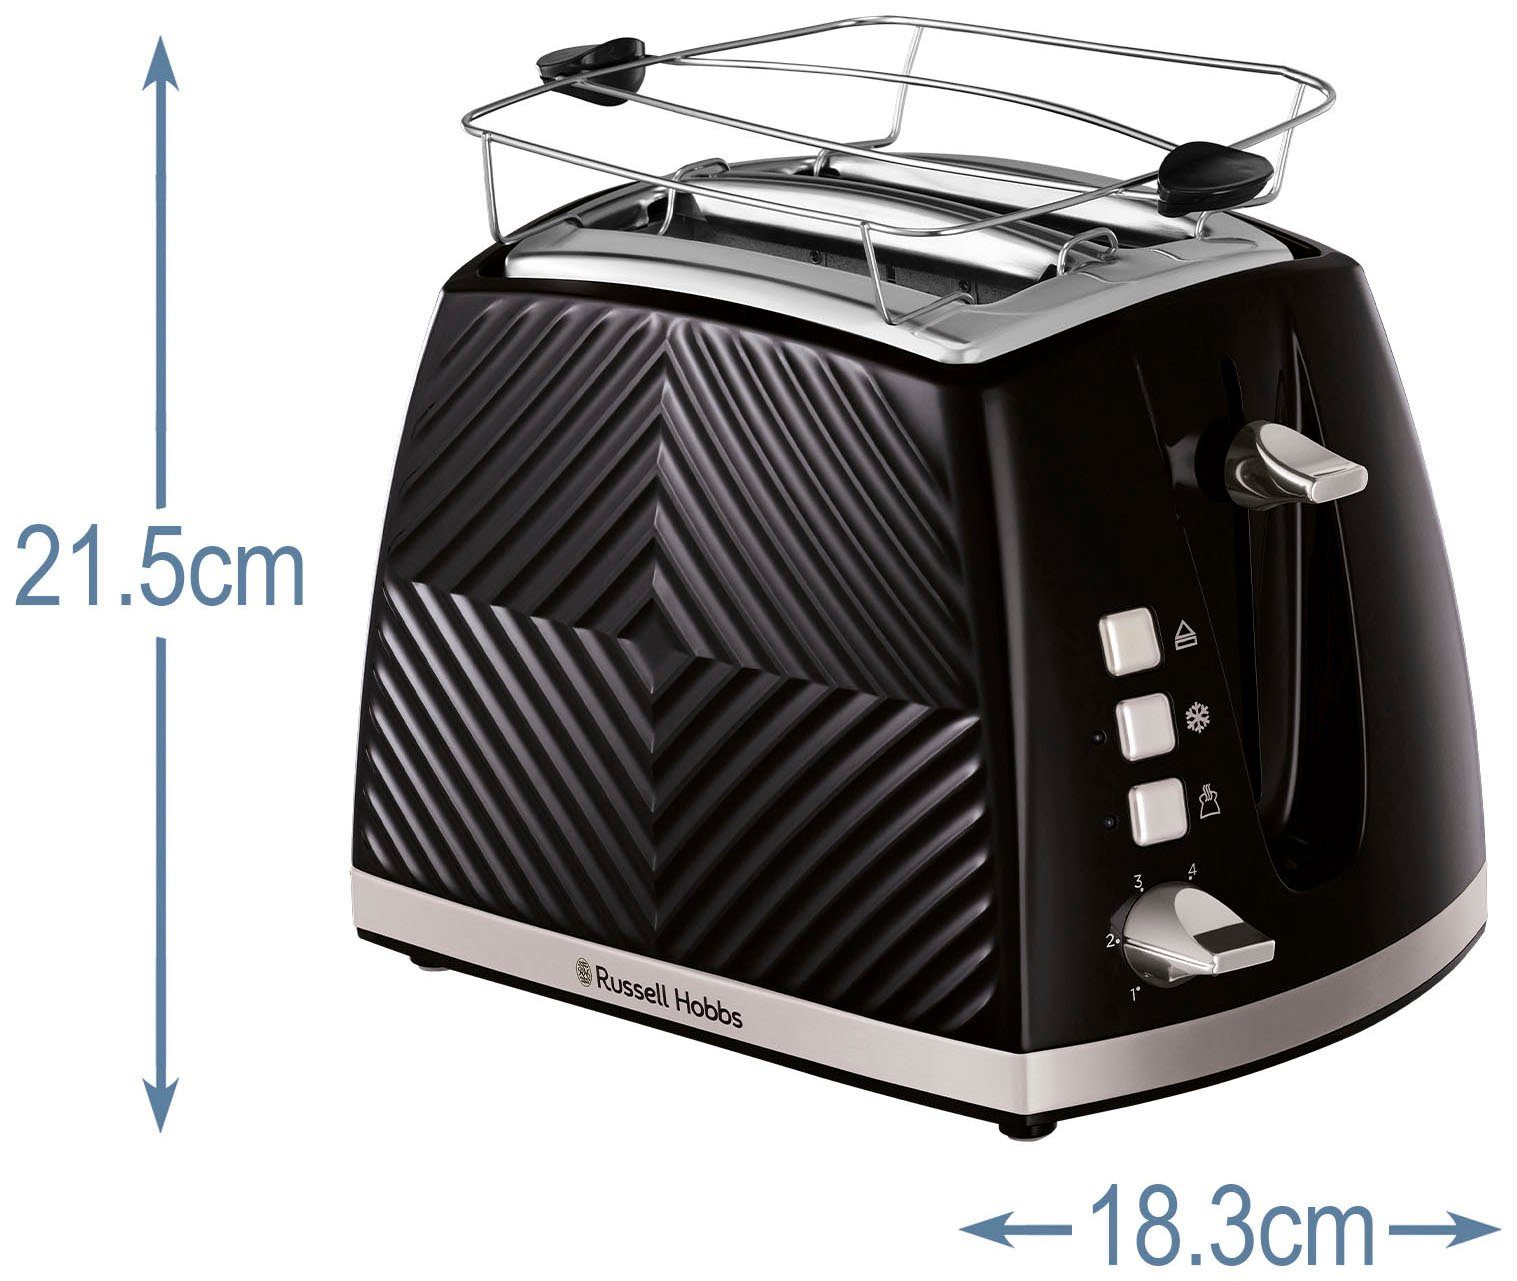 HOBBS schwarz, Toaster 850 W - Groove 26390-56, RUSSELL Brötchenaufsatz 2 Krümelschublade, Watt Schlitze, & 850